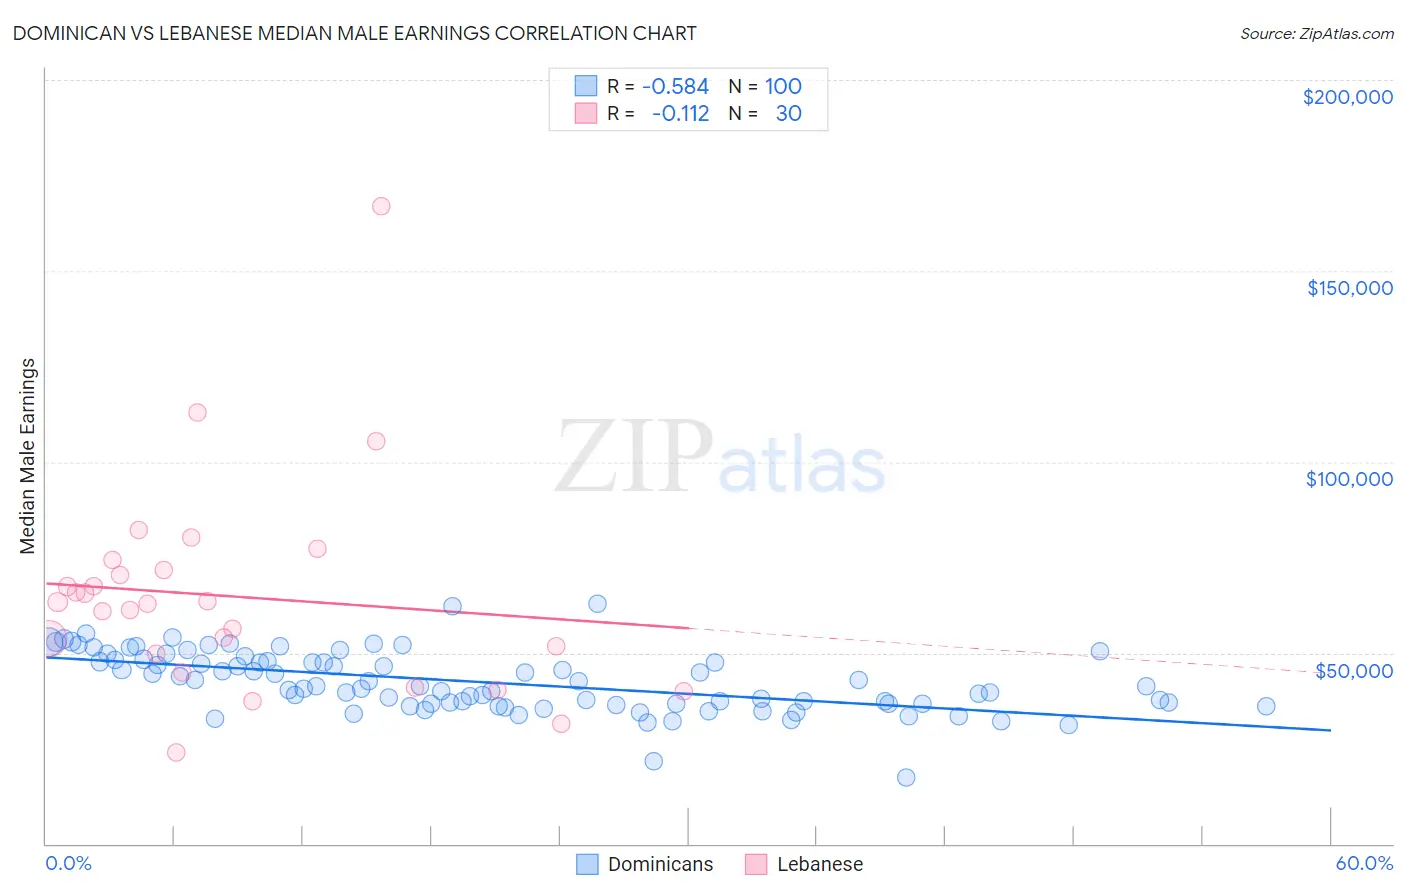 Dominican vs Lebanese Median Male Earnings